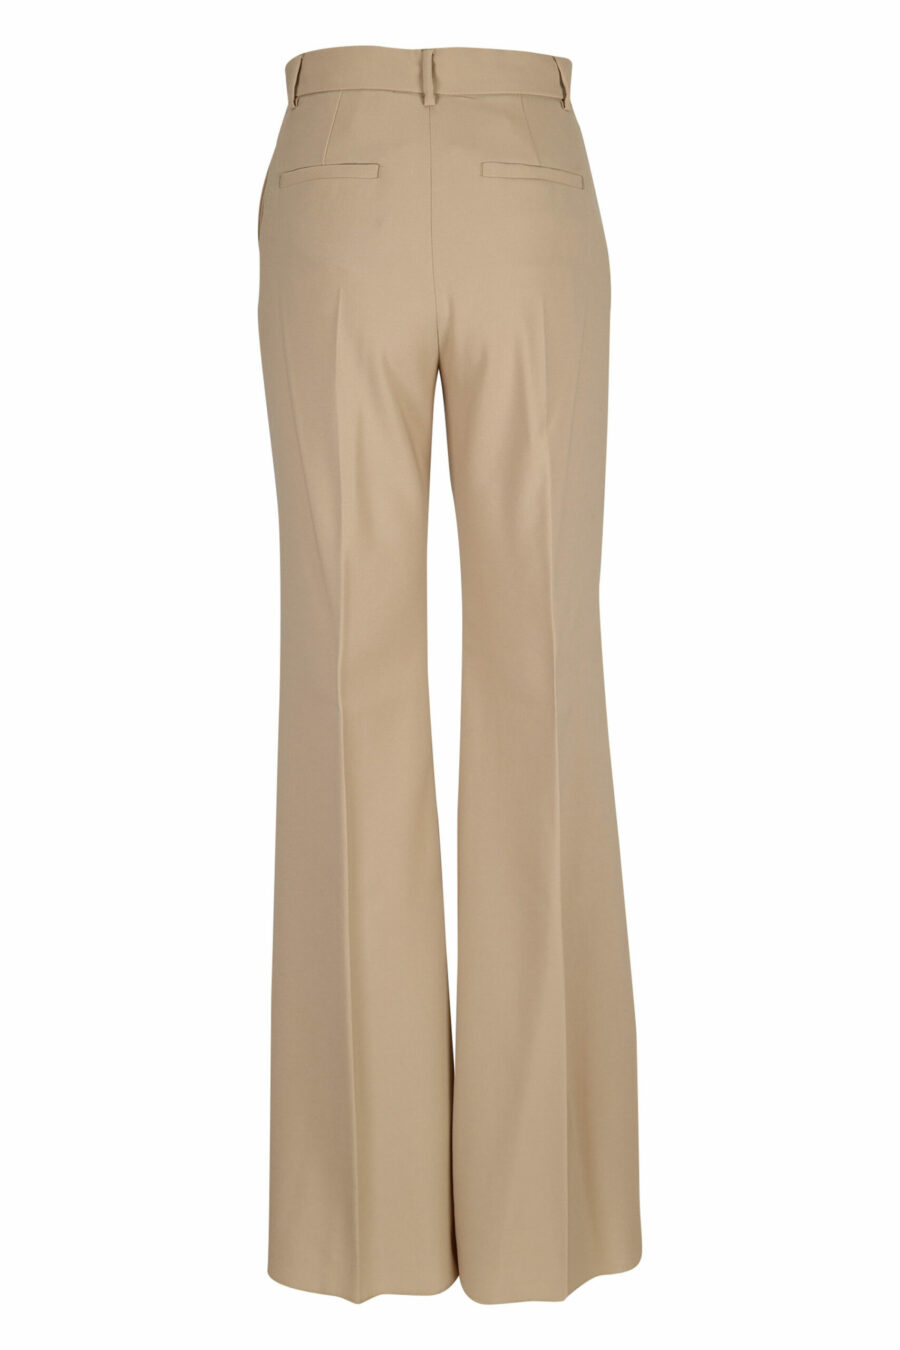 Pantalon large de couleur beige - 21310141060132 2 échelles